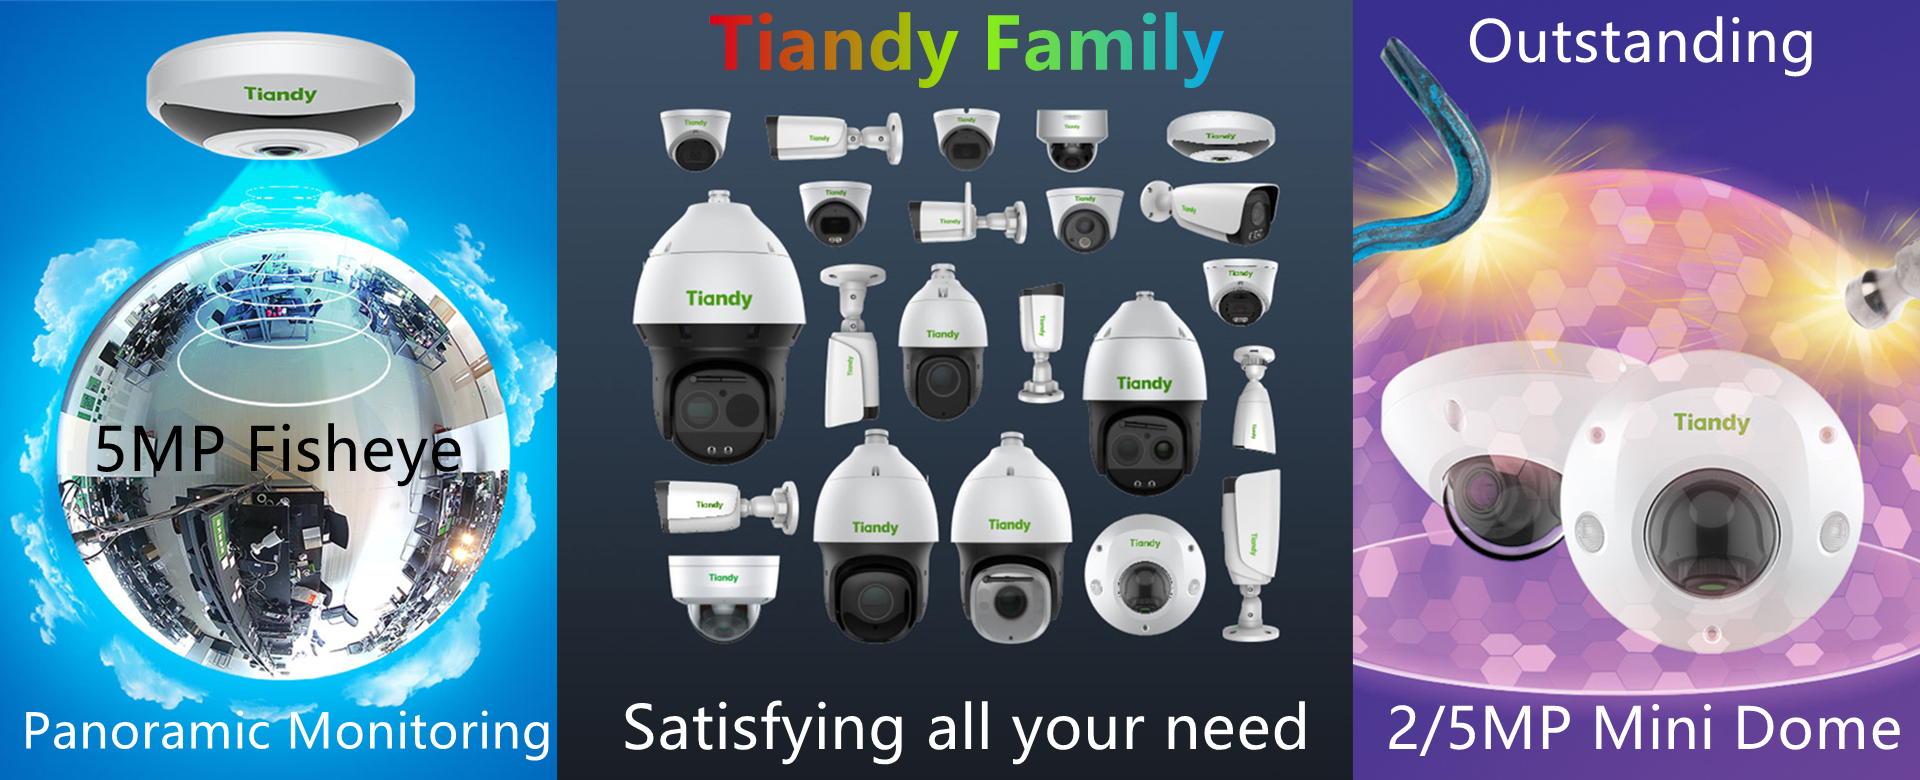 Tiandy Family